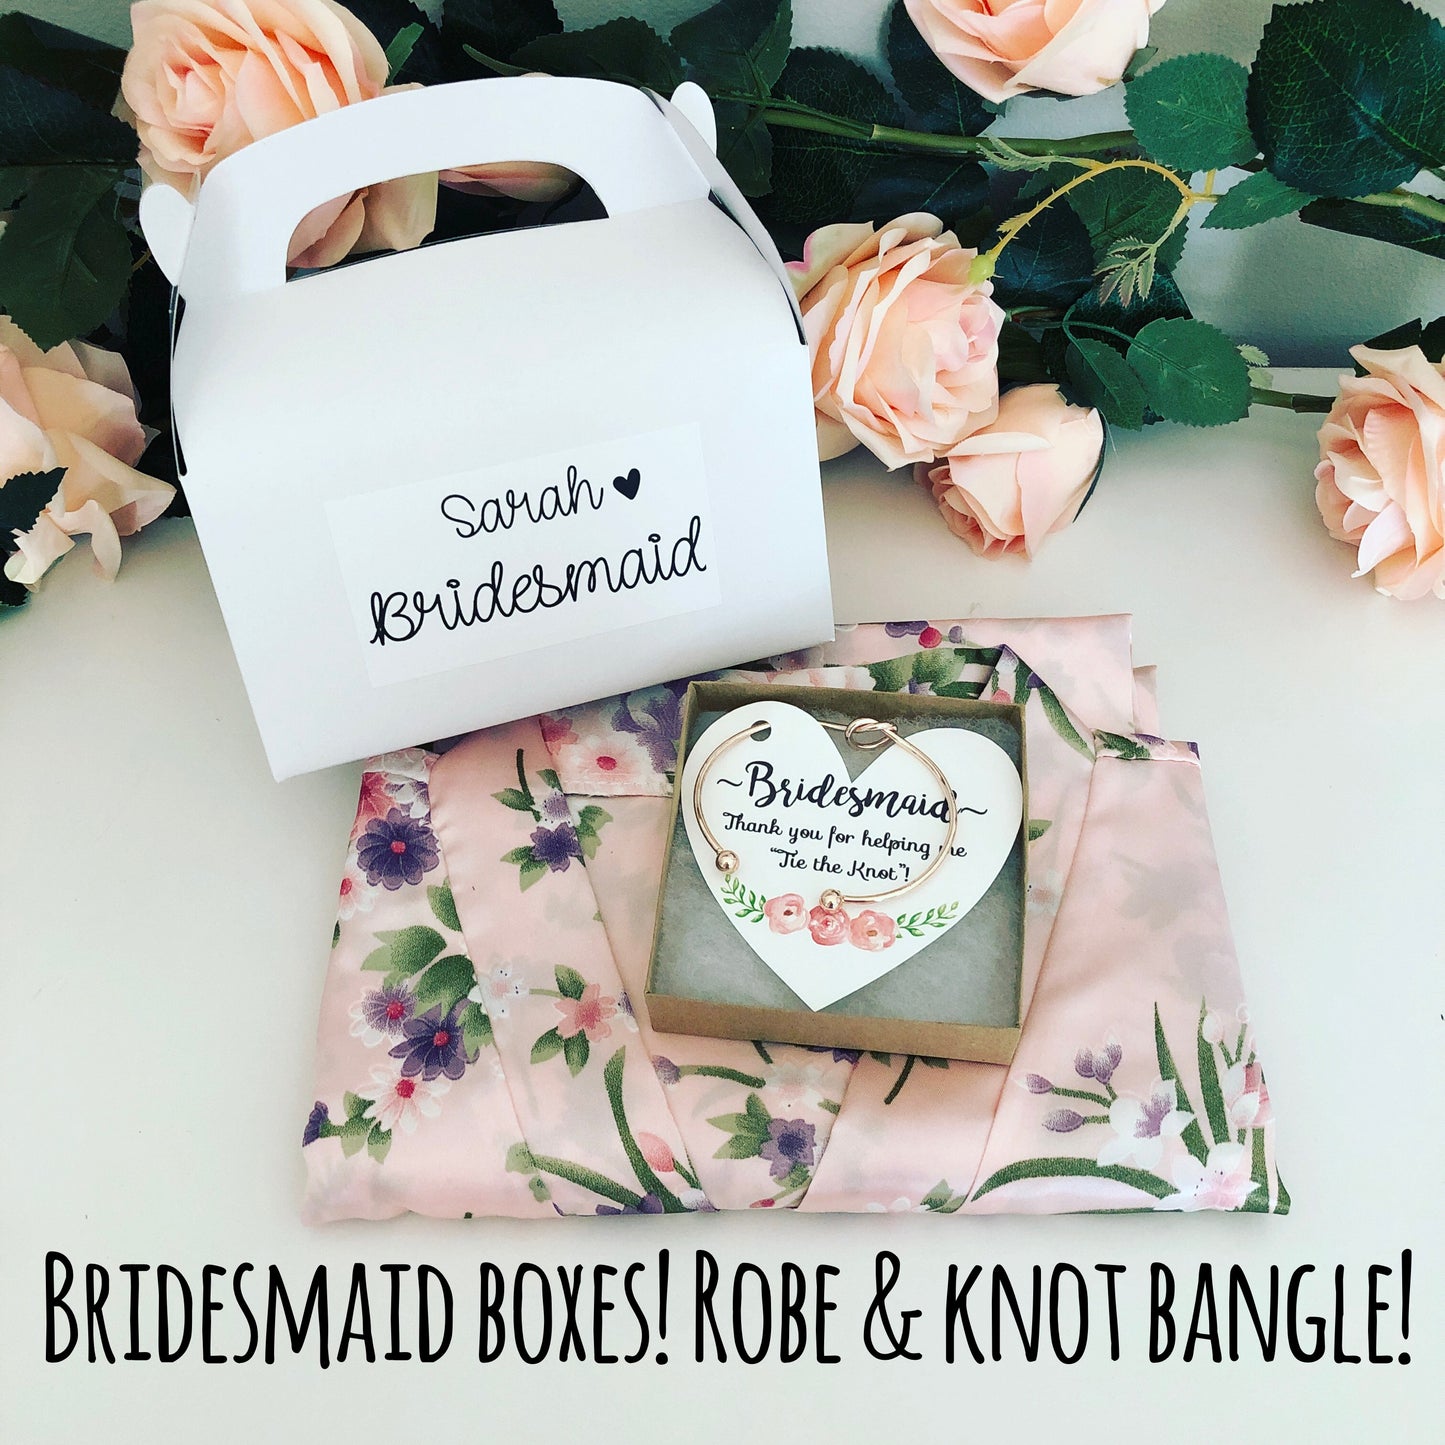 Bridesmaid Boxes! Robe and Knot Bangle